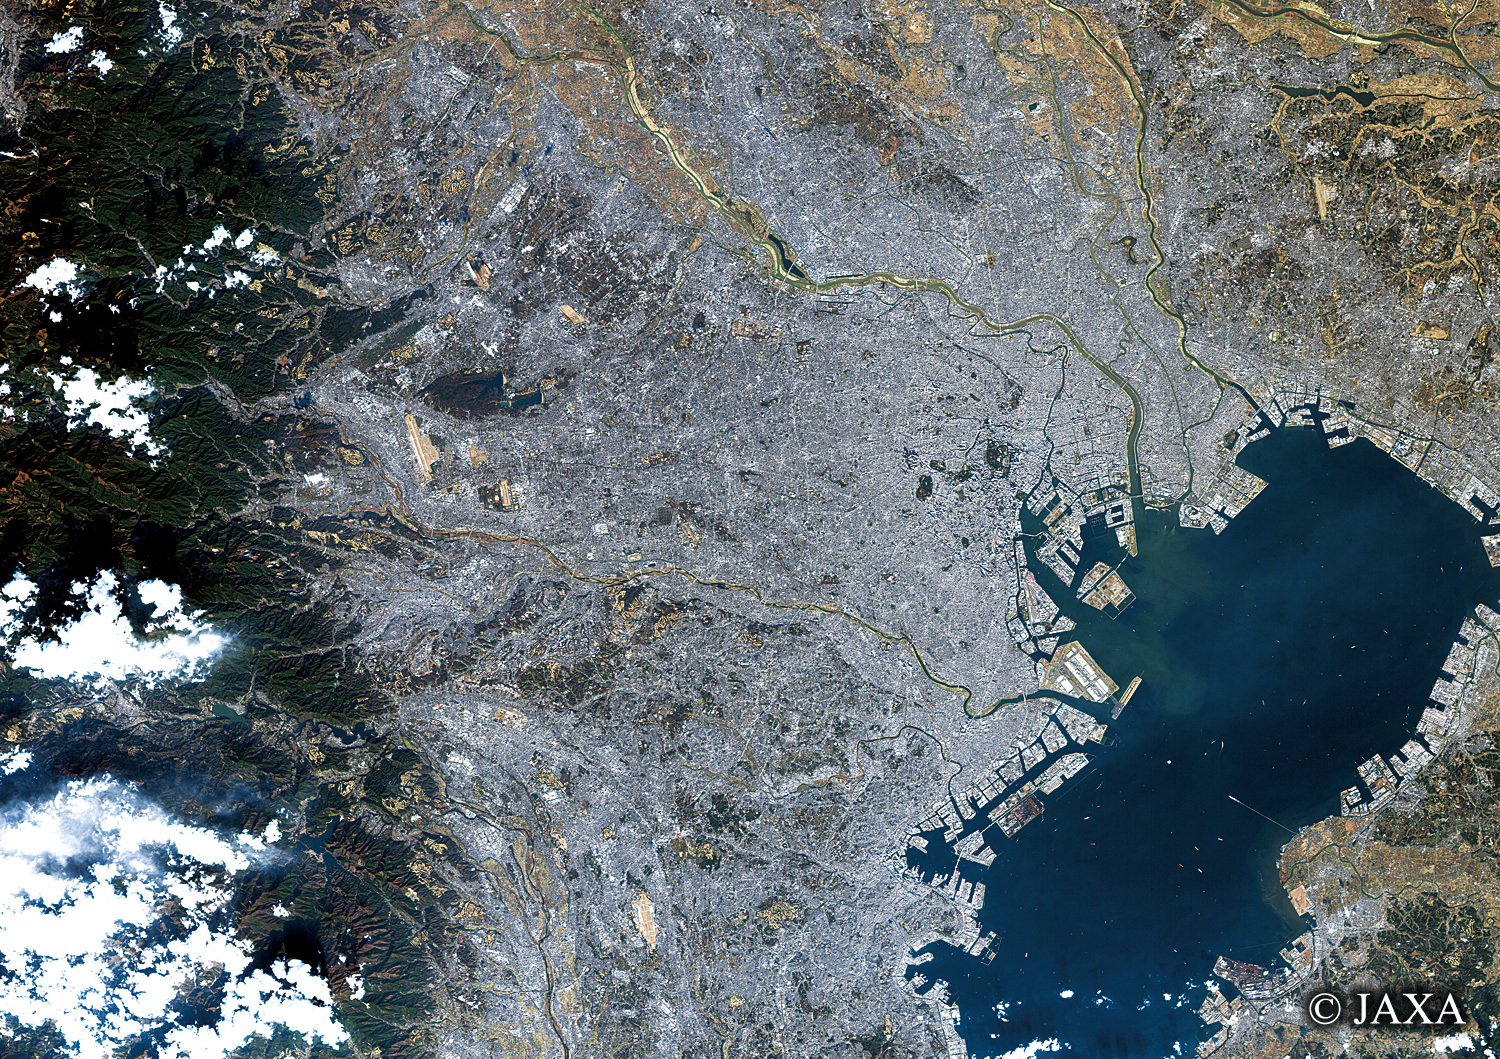 だいちから見た日本の都市 東京都と周辺地域:衛星画像